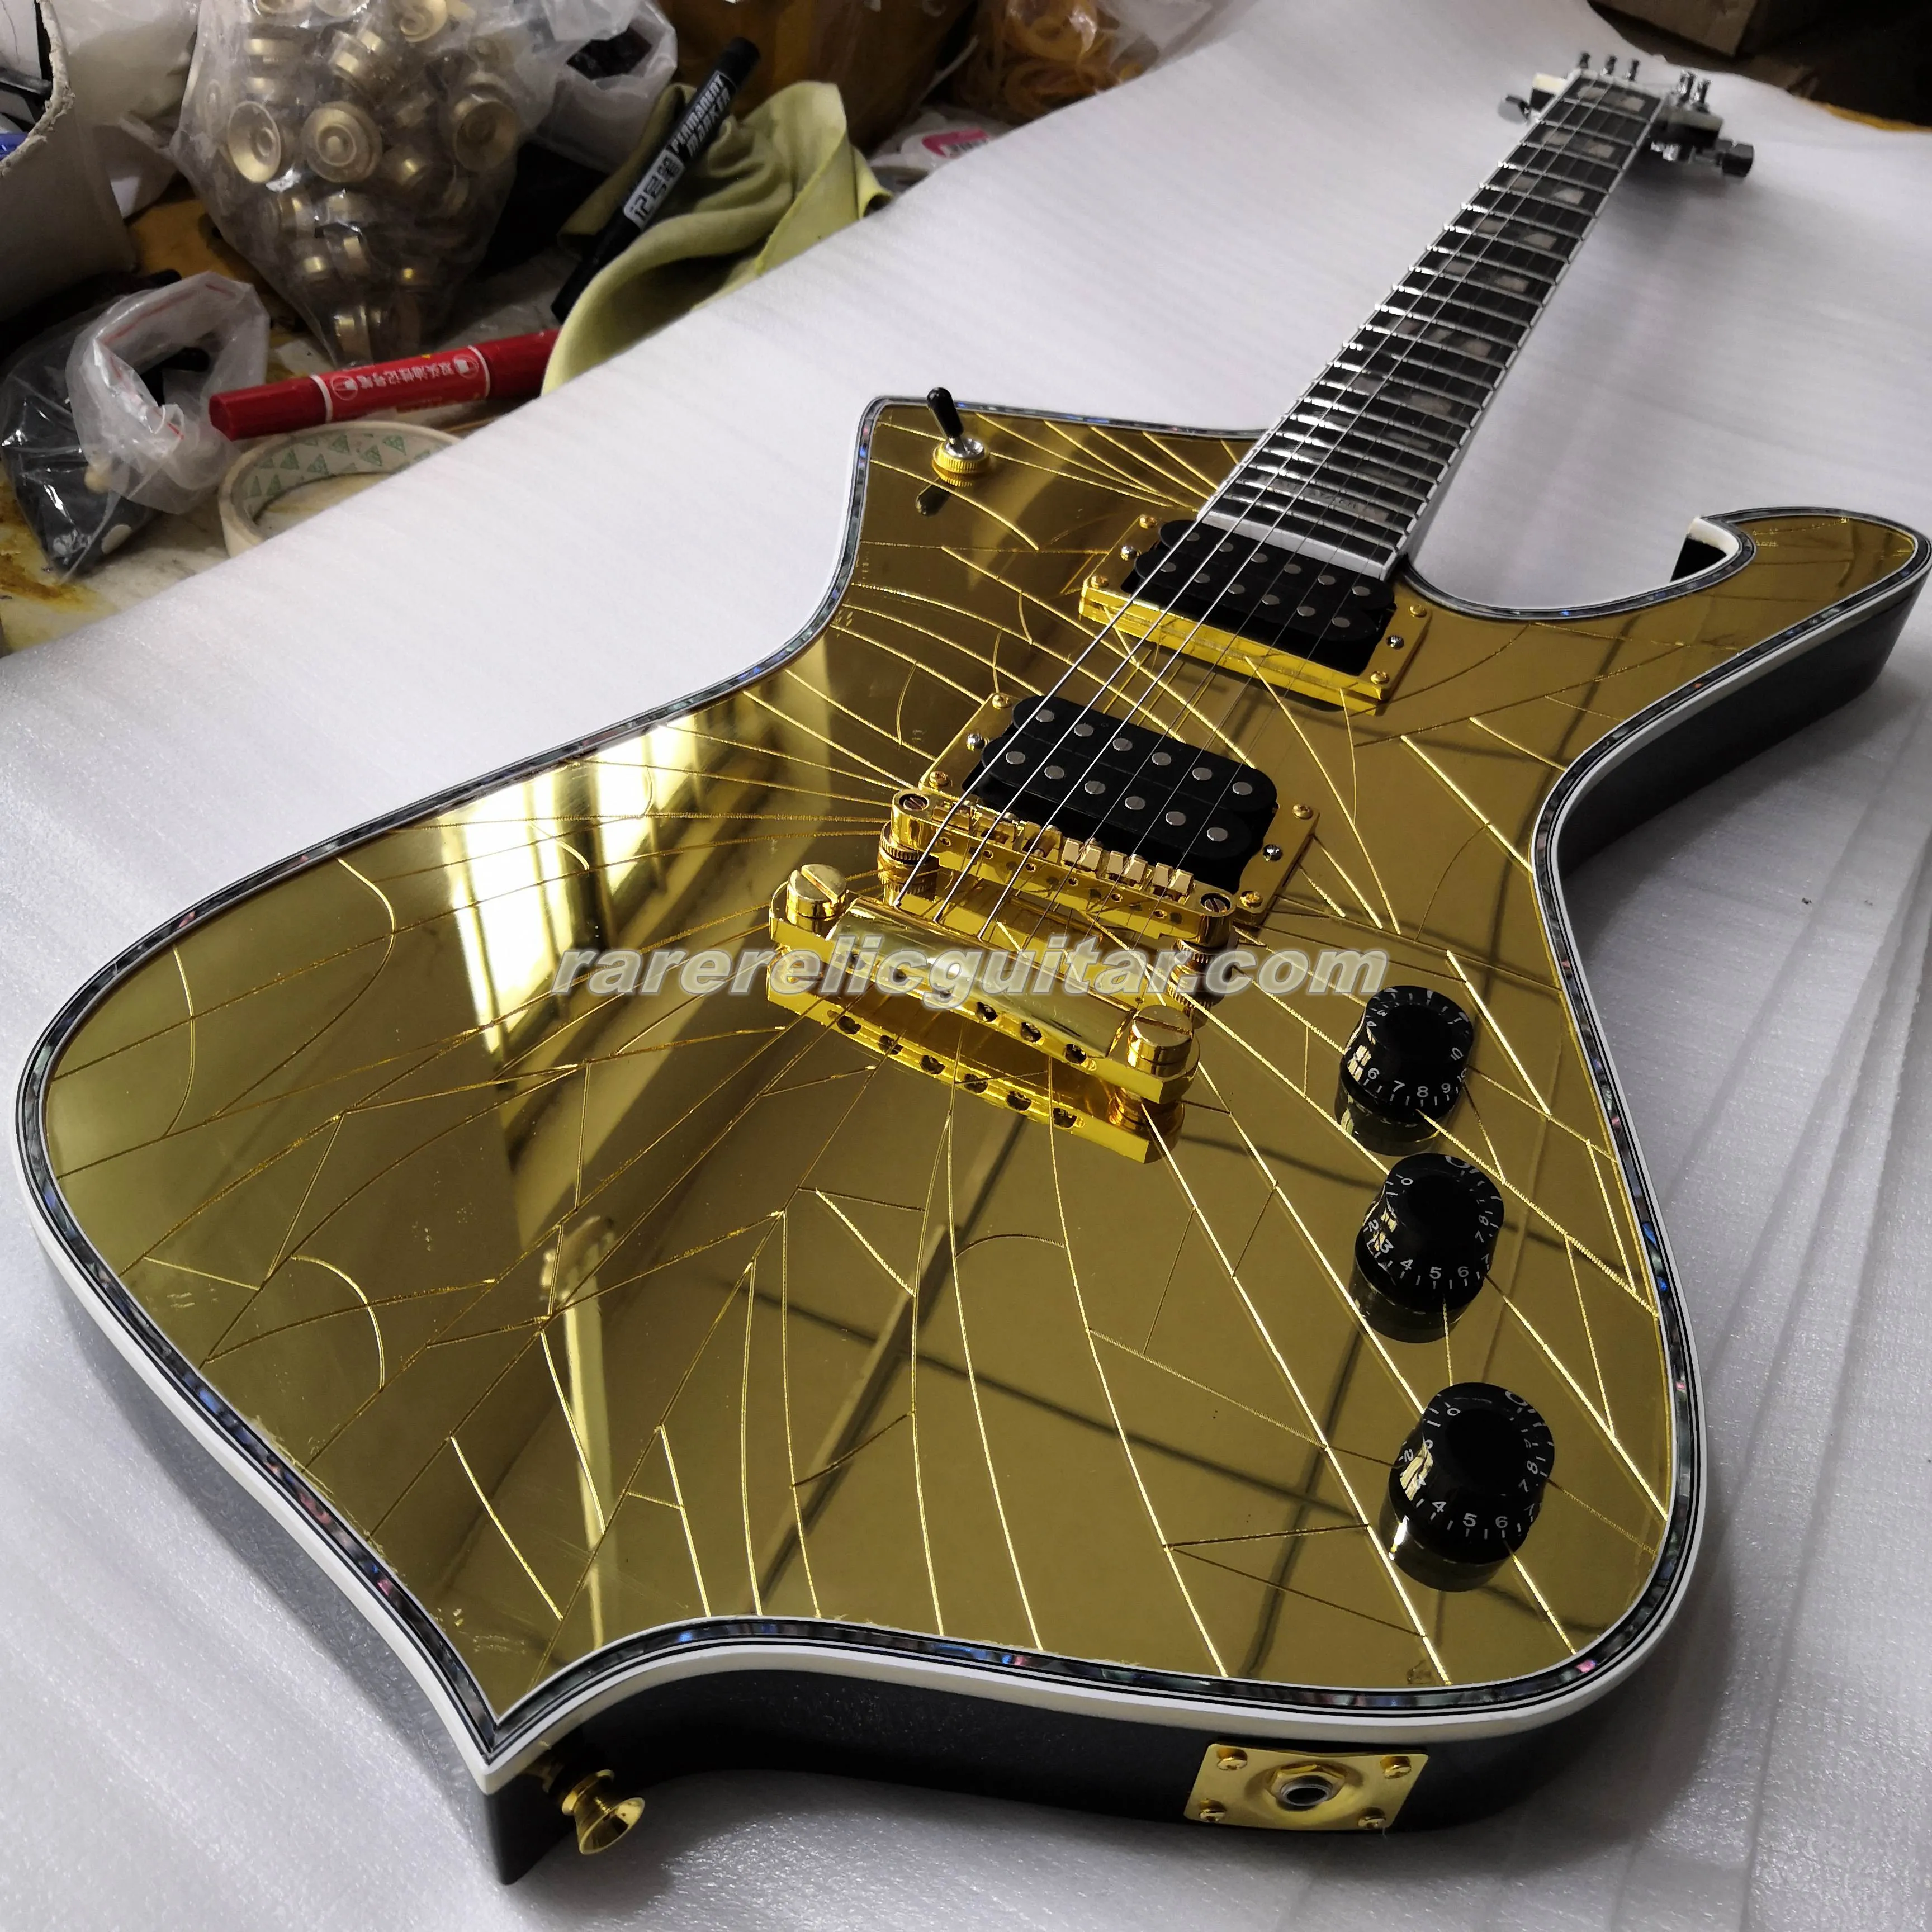 Stokta PS2CM Mor Altın Şerit Çatlamış Ayna Iceman Stanley Elektro Gitar Abalone Vücut Bağlayıcı İnci Abalone Blok Kakmı